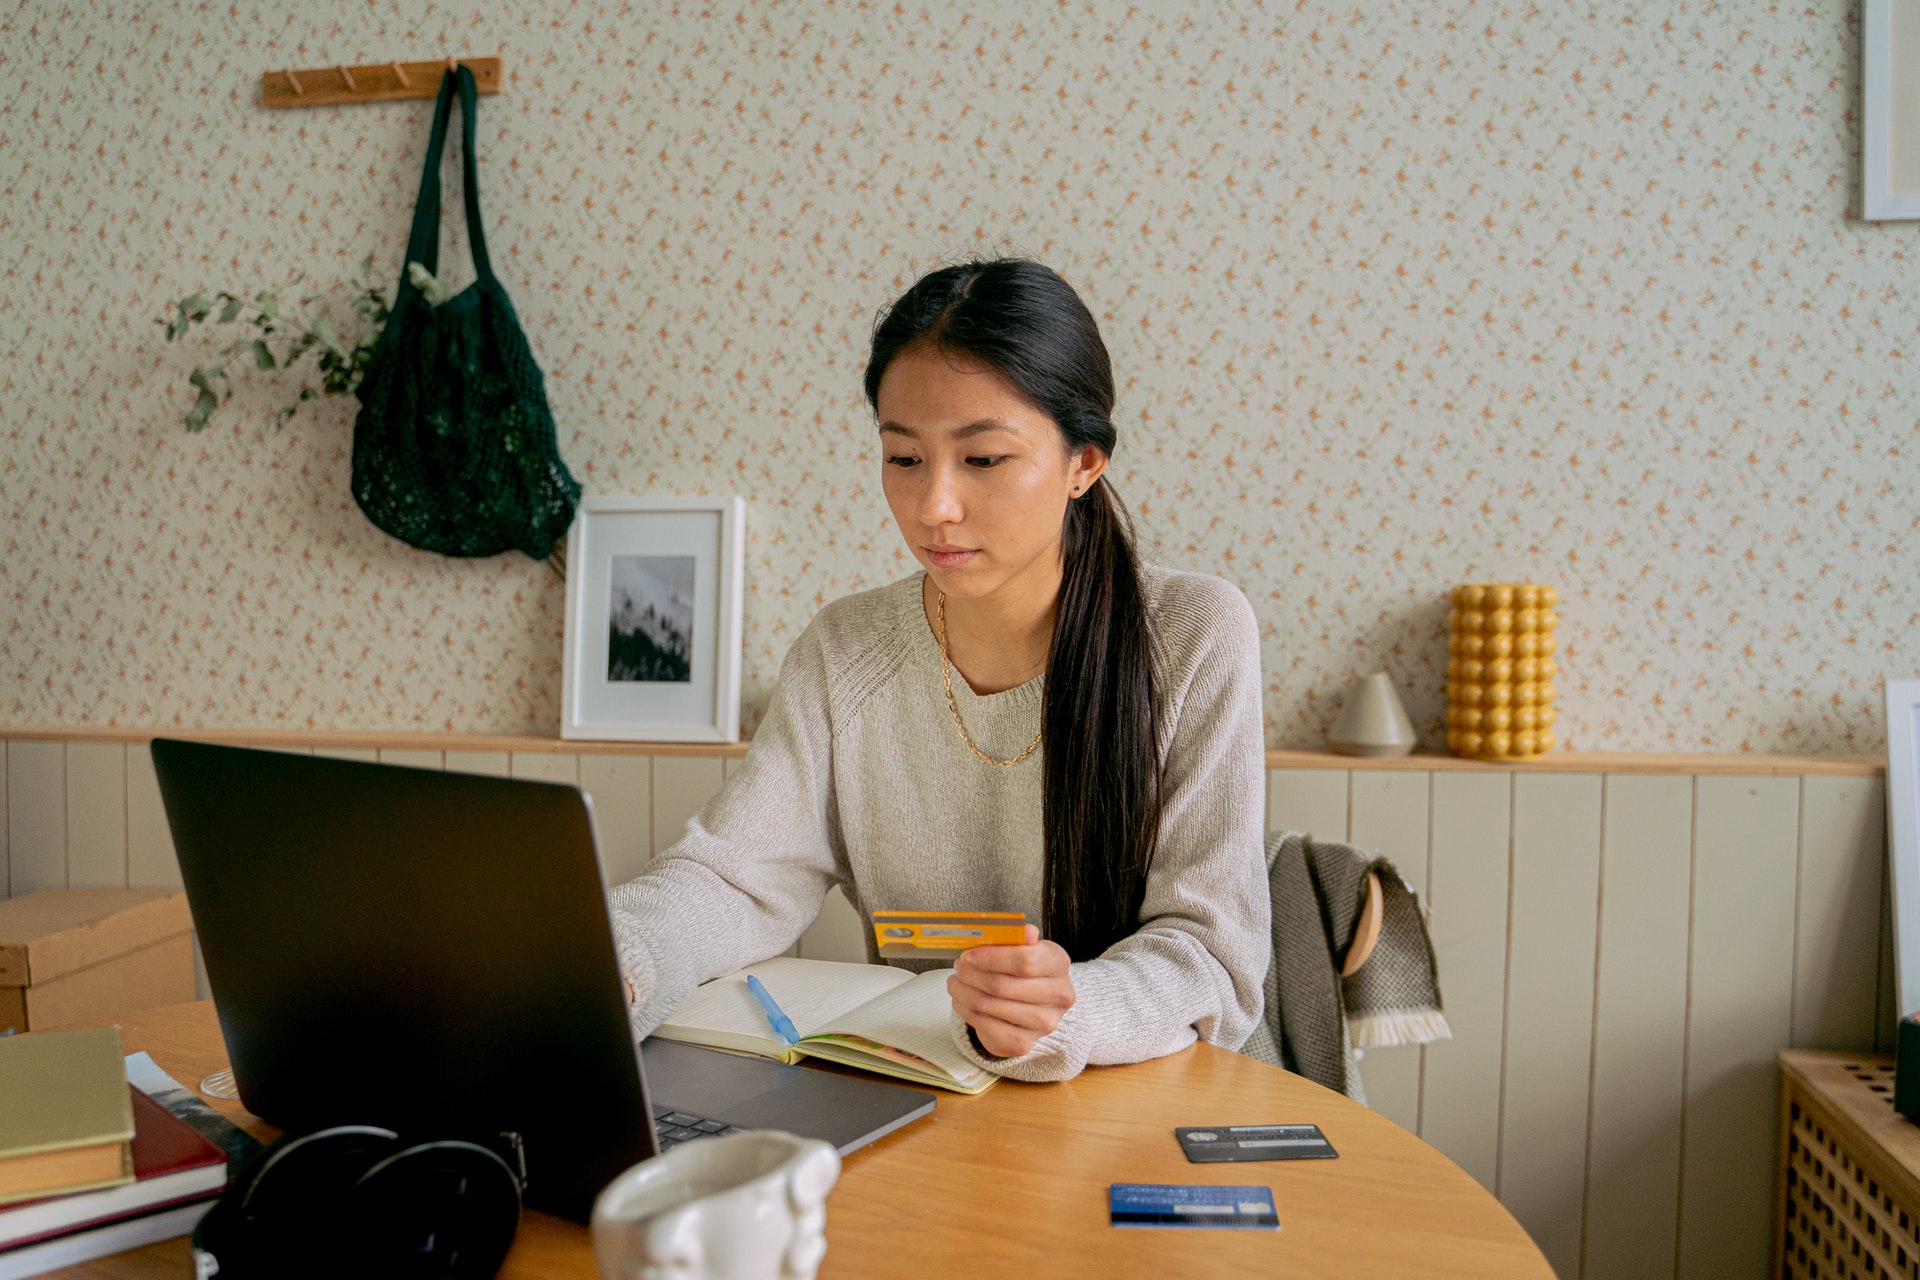 Mulher sentada com cartão de crédito na mão e notebook em uma mesa. Fonte: Pexels